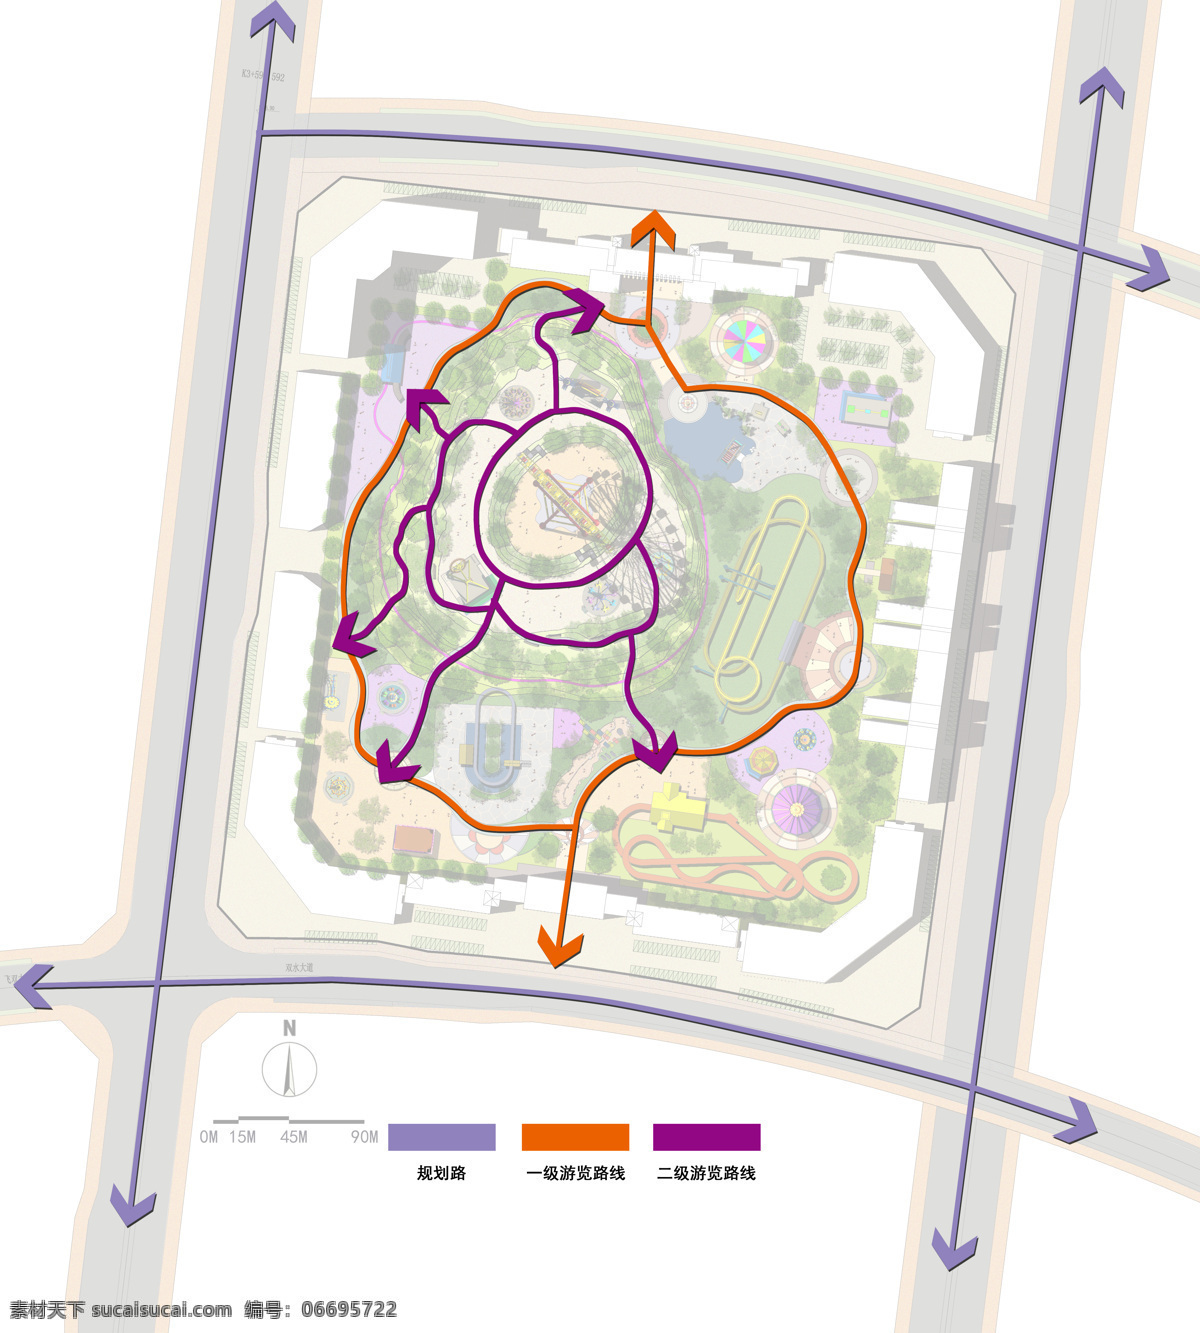 乐园 规划 路线 分析图 乐园规划设计 游乐园 游乐场 主题乐园 公园 环境设计 效果图